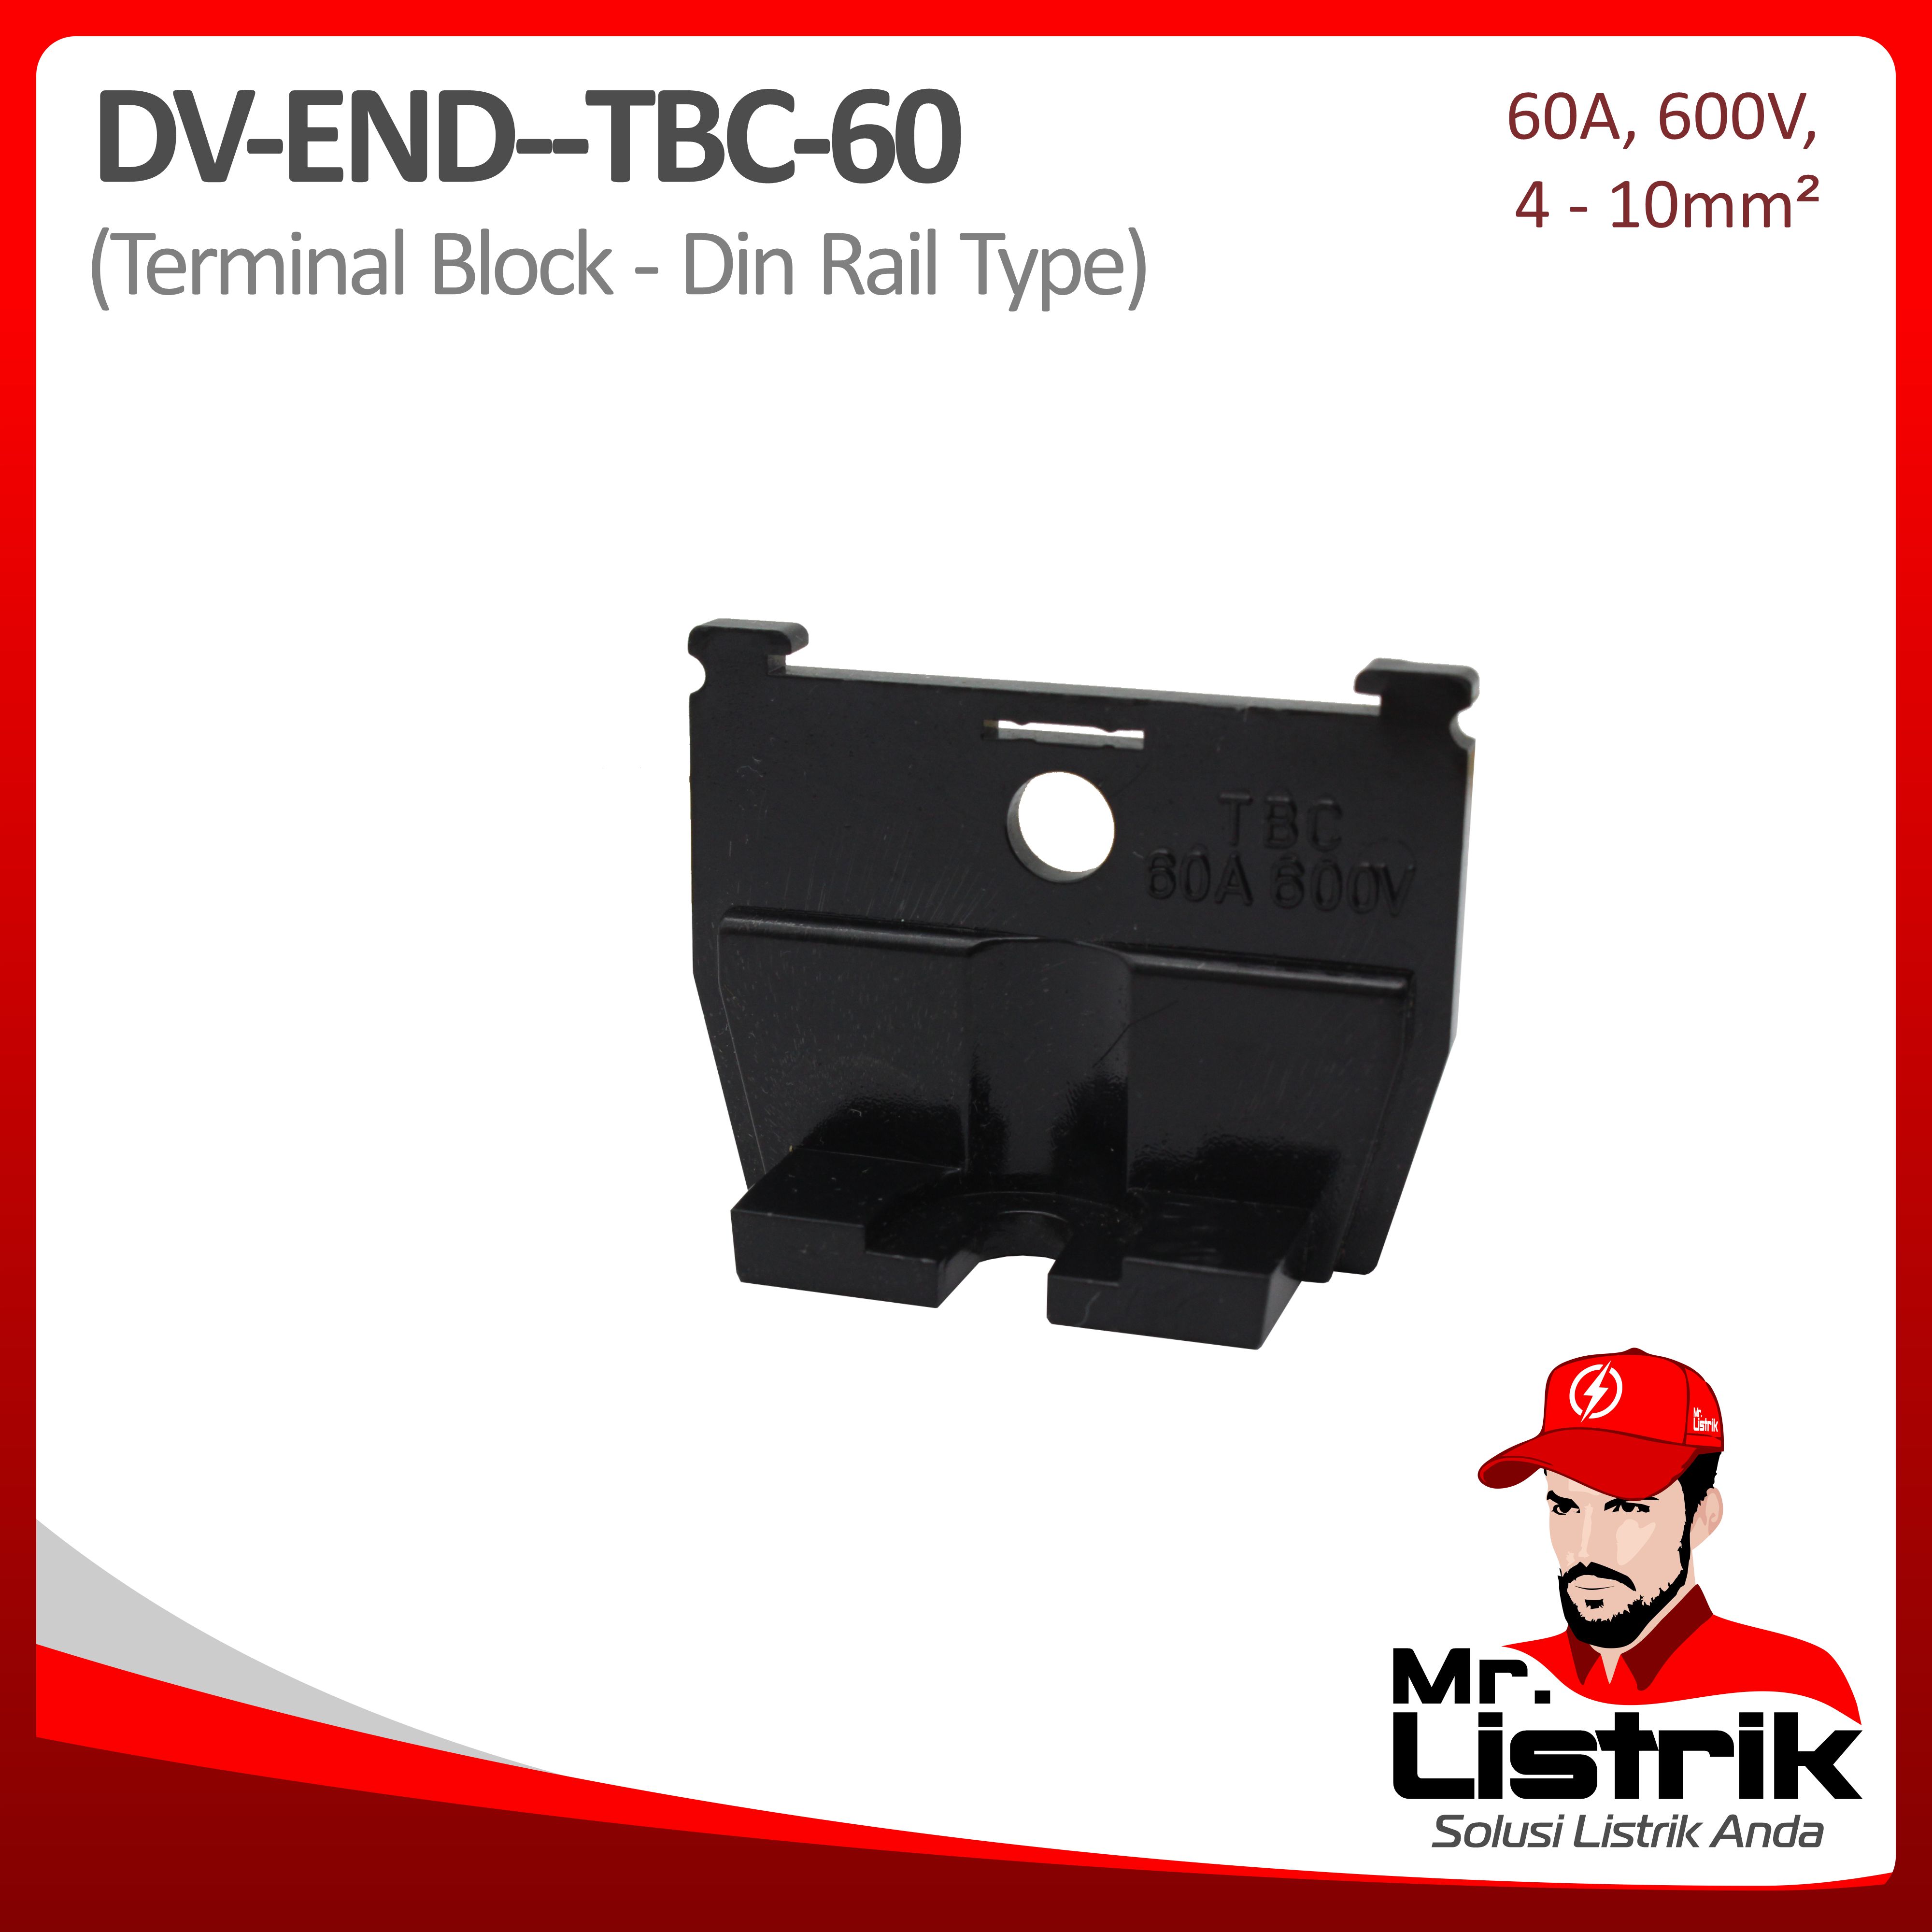 End Terminal Block TBC Series 60A DV End-TBC-60